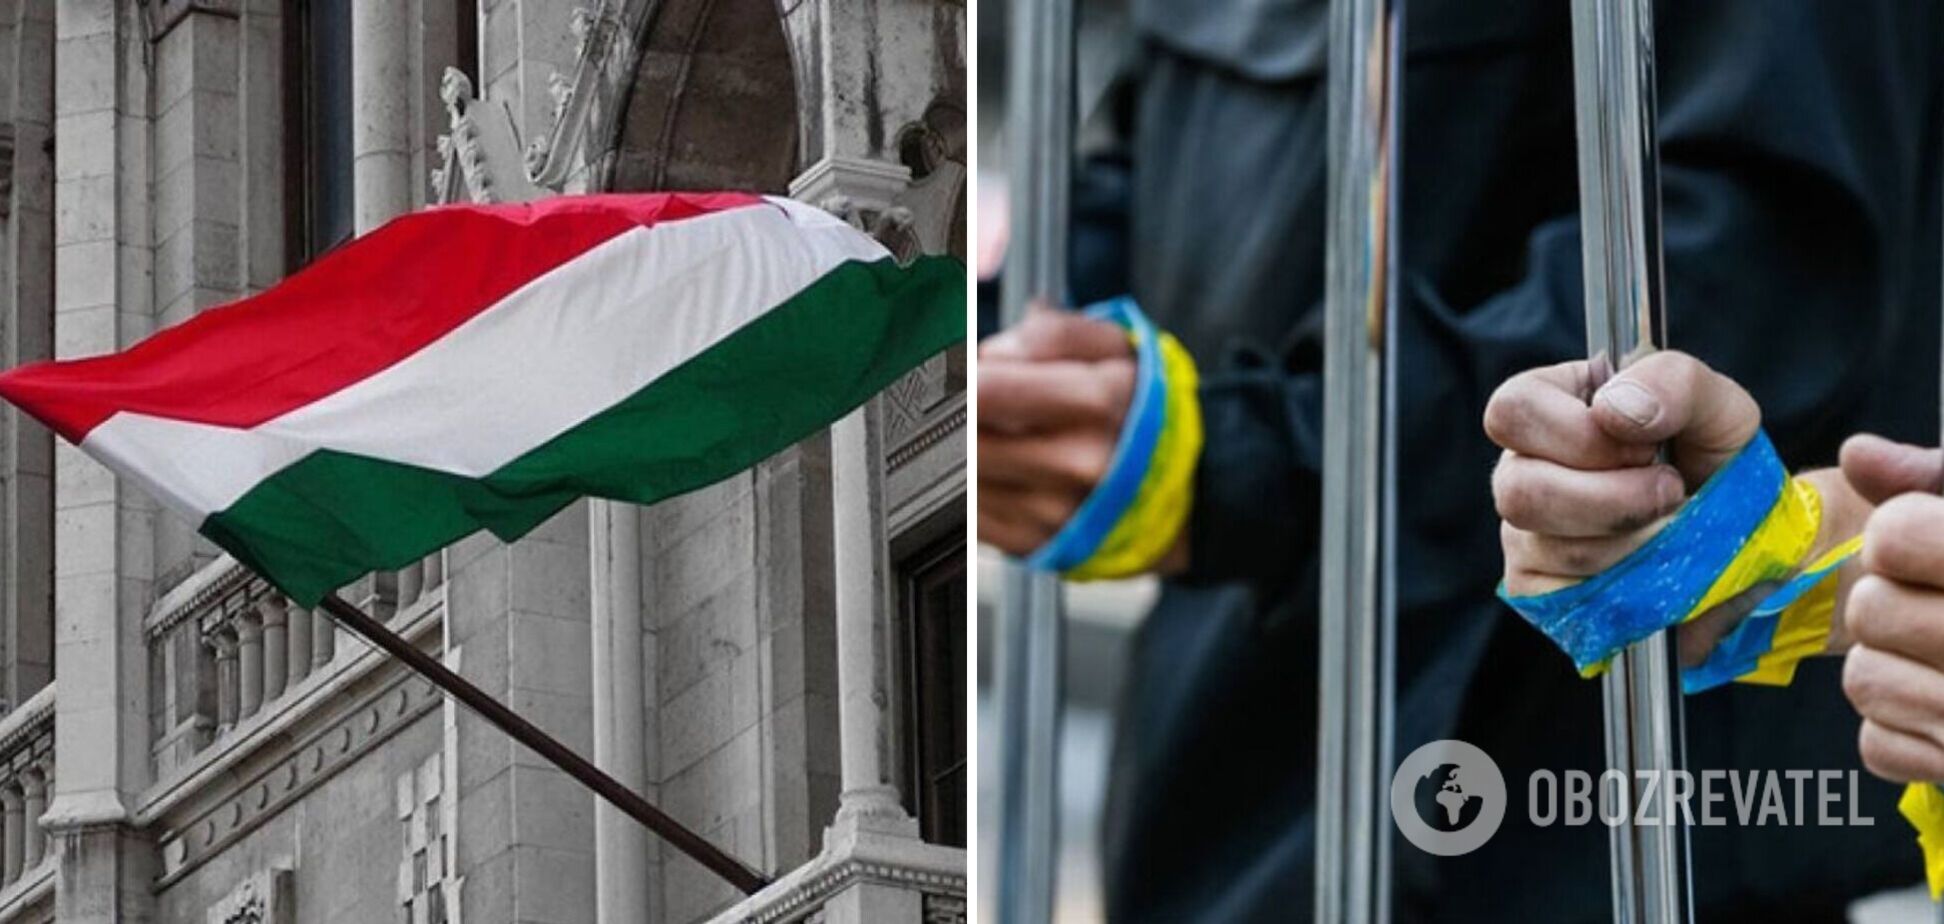 Содержатся в изоляции, Будапешт игнорирует запросы: в МИД рассказали о судьбе украинских пленных, которых РФ передала Венгрии